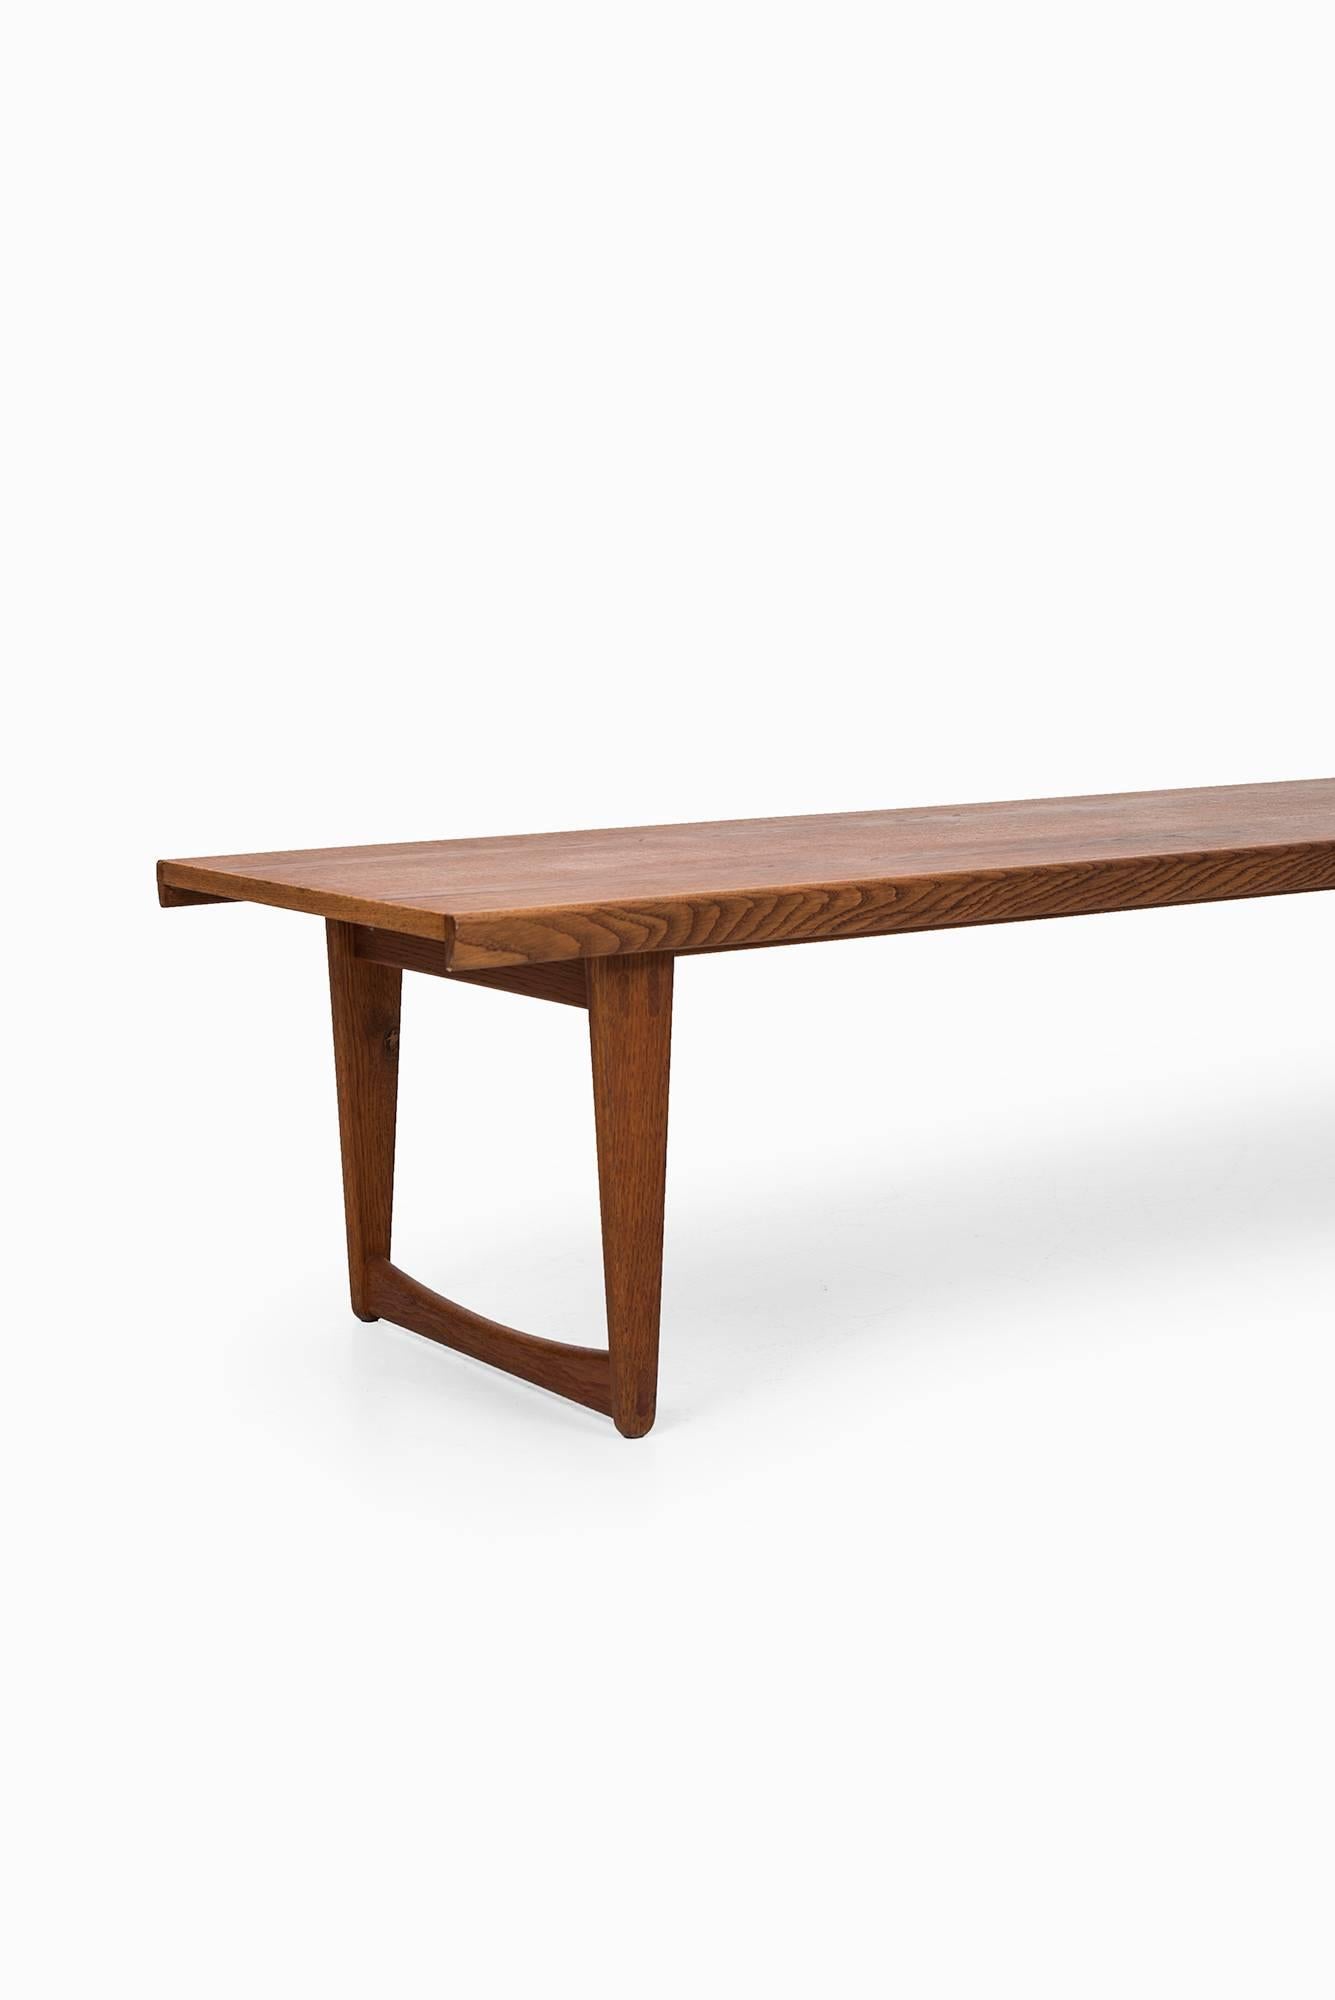 Oak Yngve Ekström side table / bench produced by Westbergs in Sweden